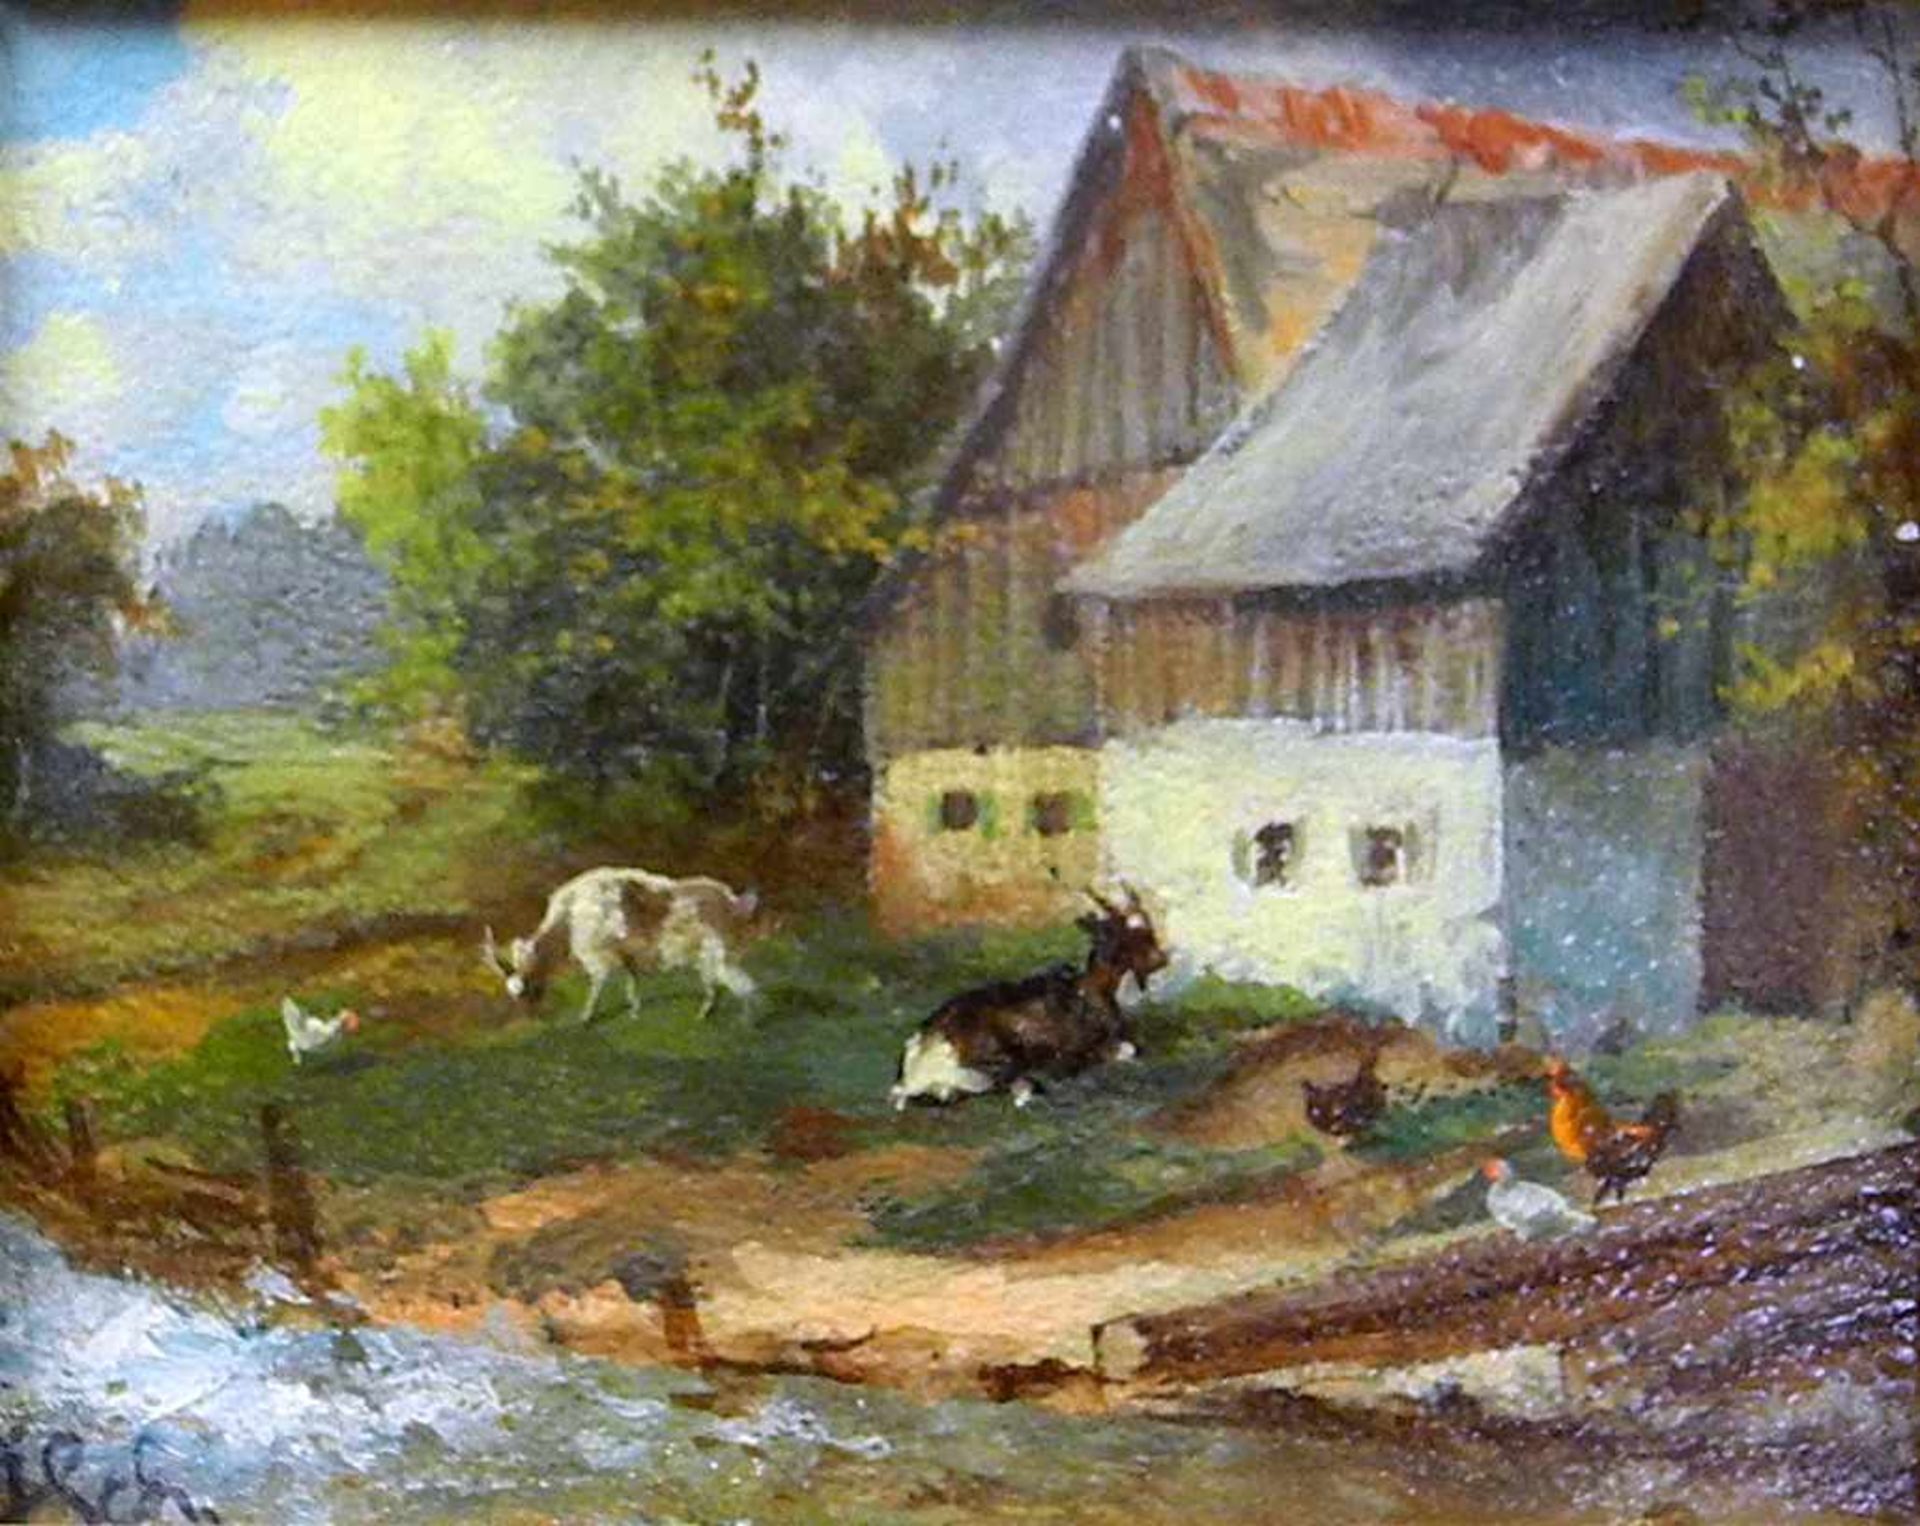 Julius Scheuerer zugeschrieben, 1859 München - 1913 Planegg Öl/Holz. Ruhiges Bauernleben. Links